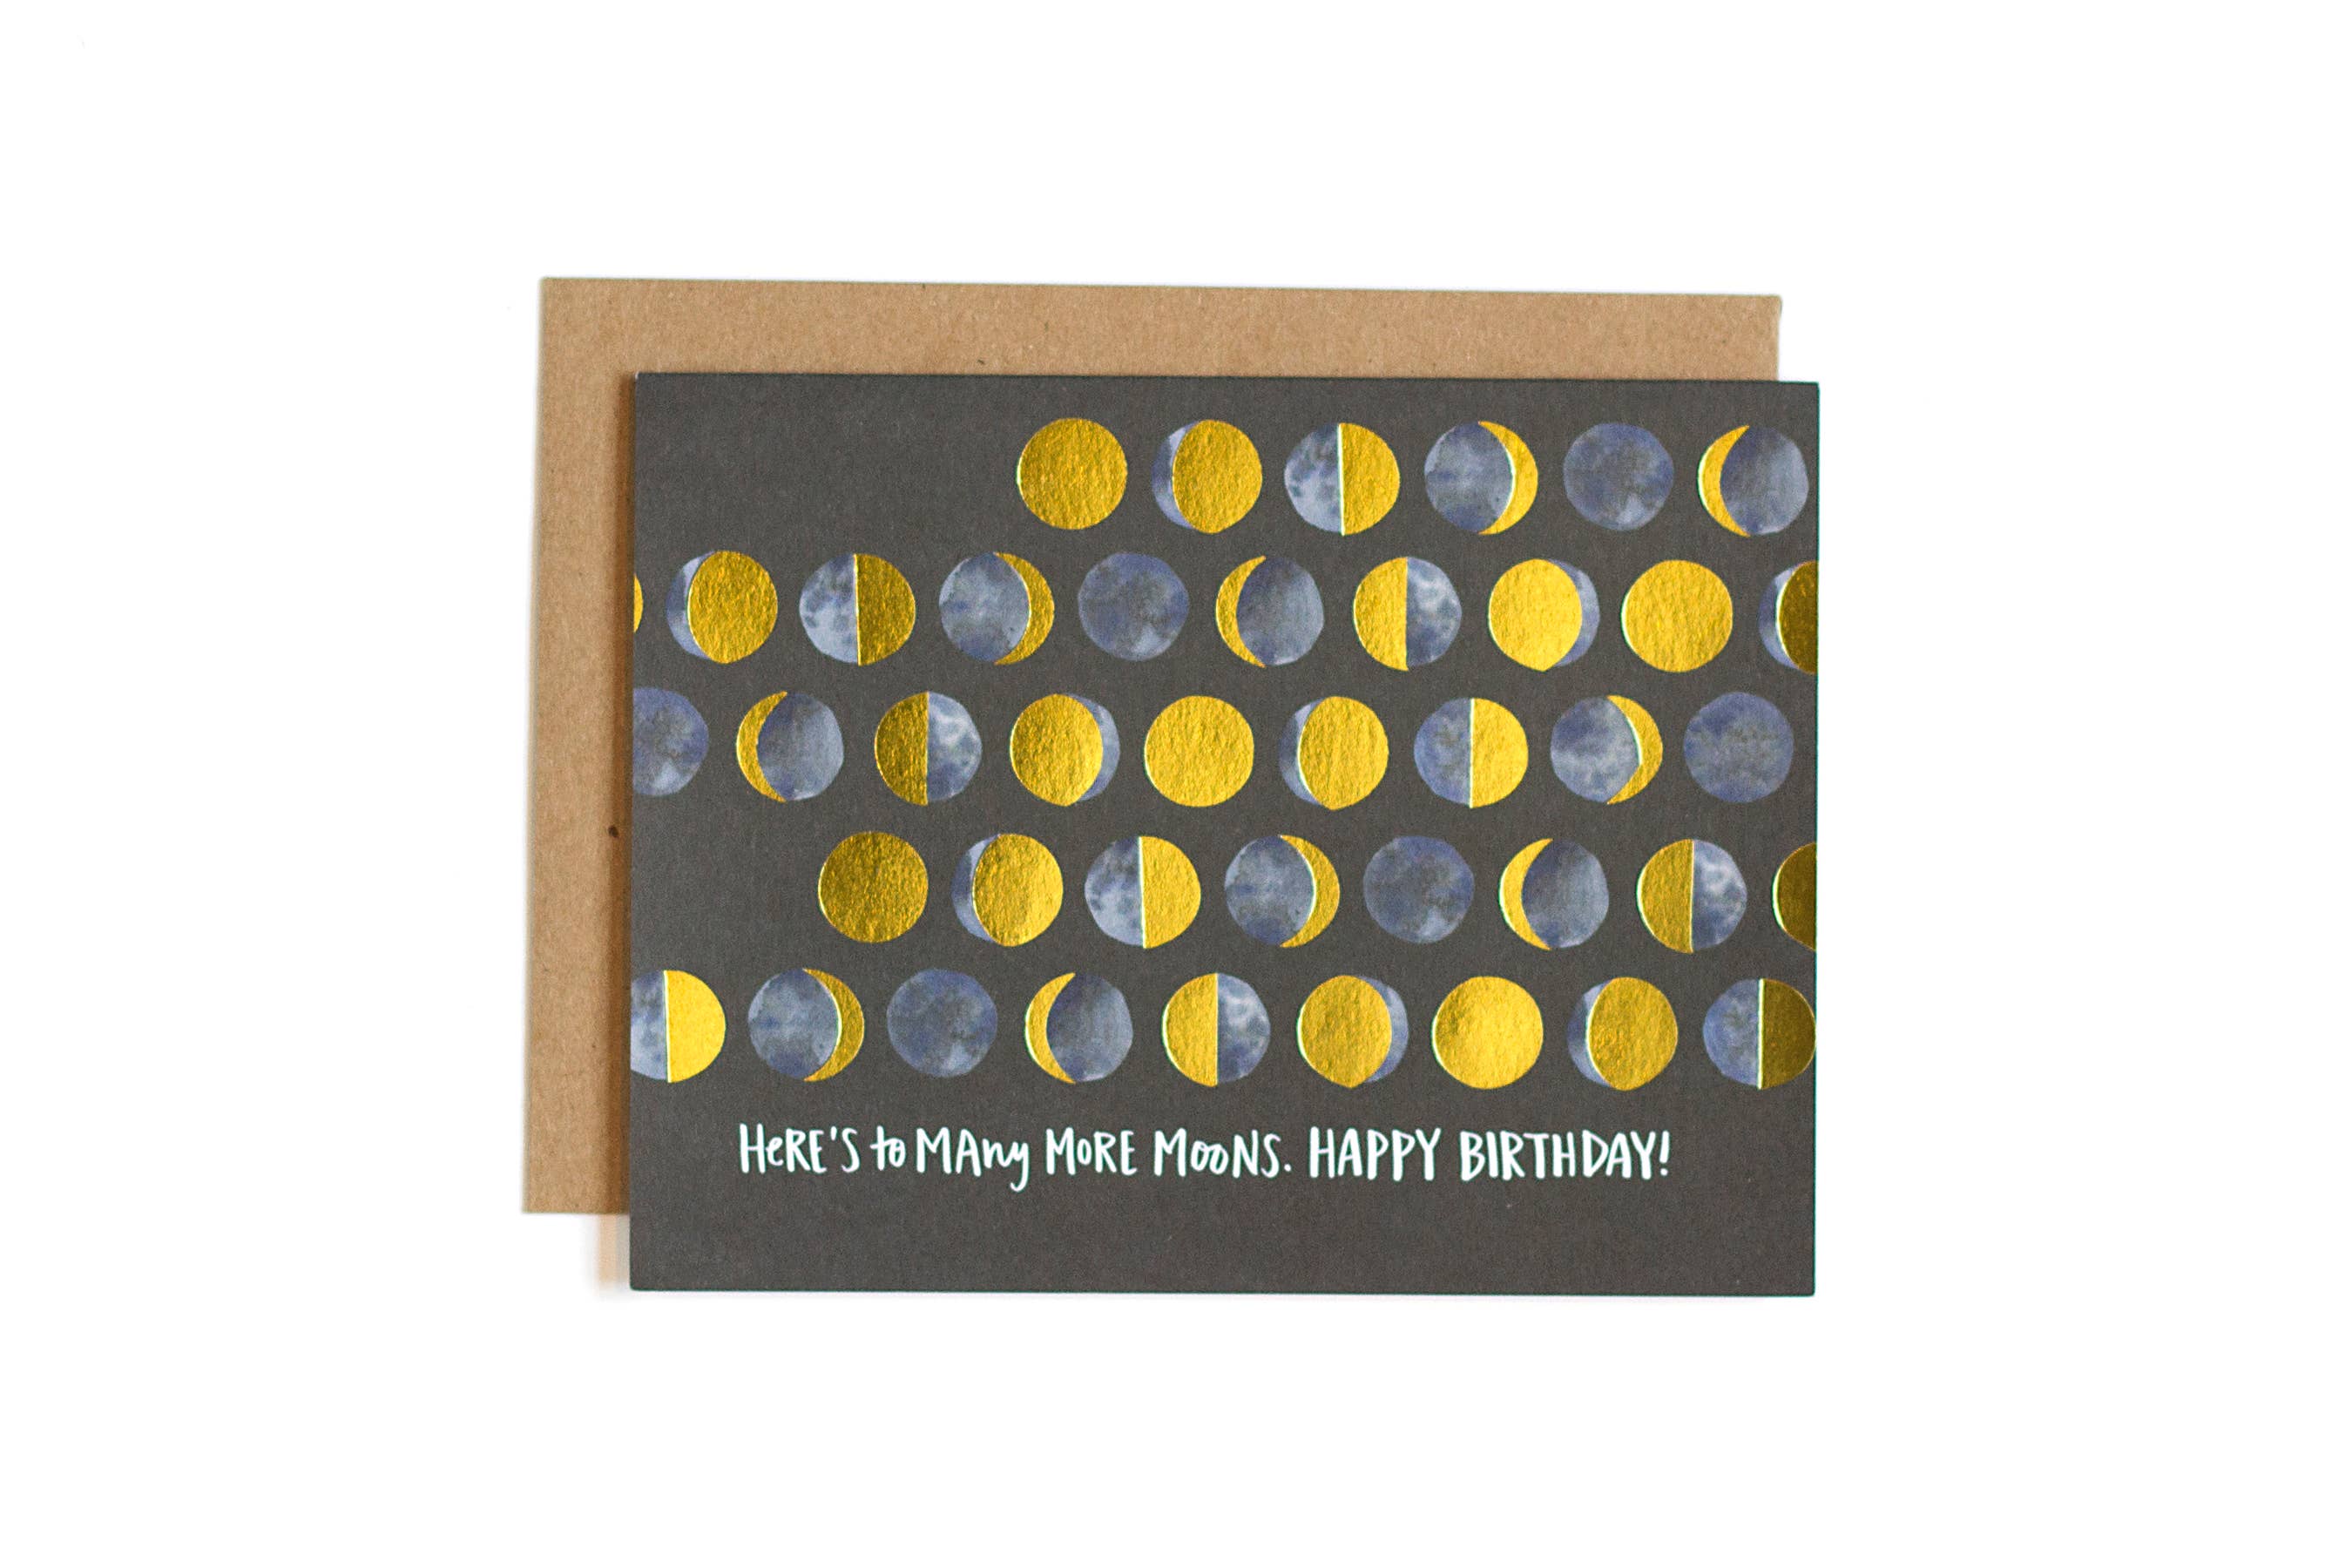 Many Moons - Celestial Birthday Card